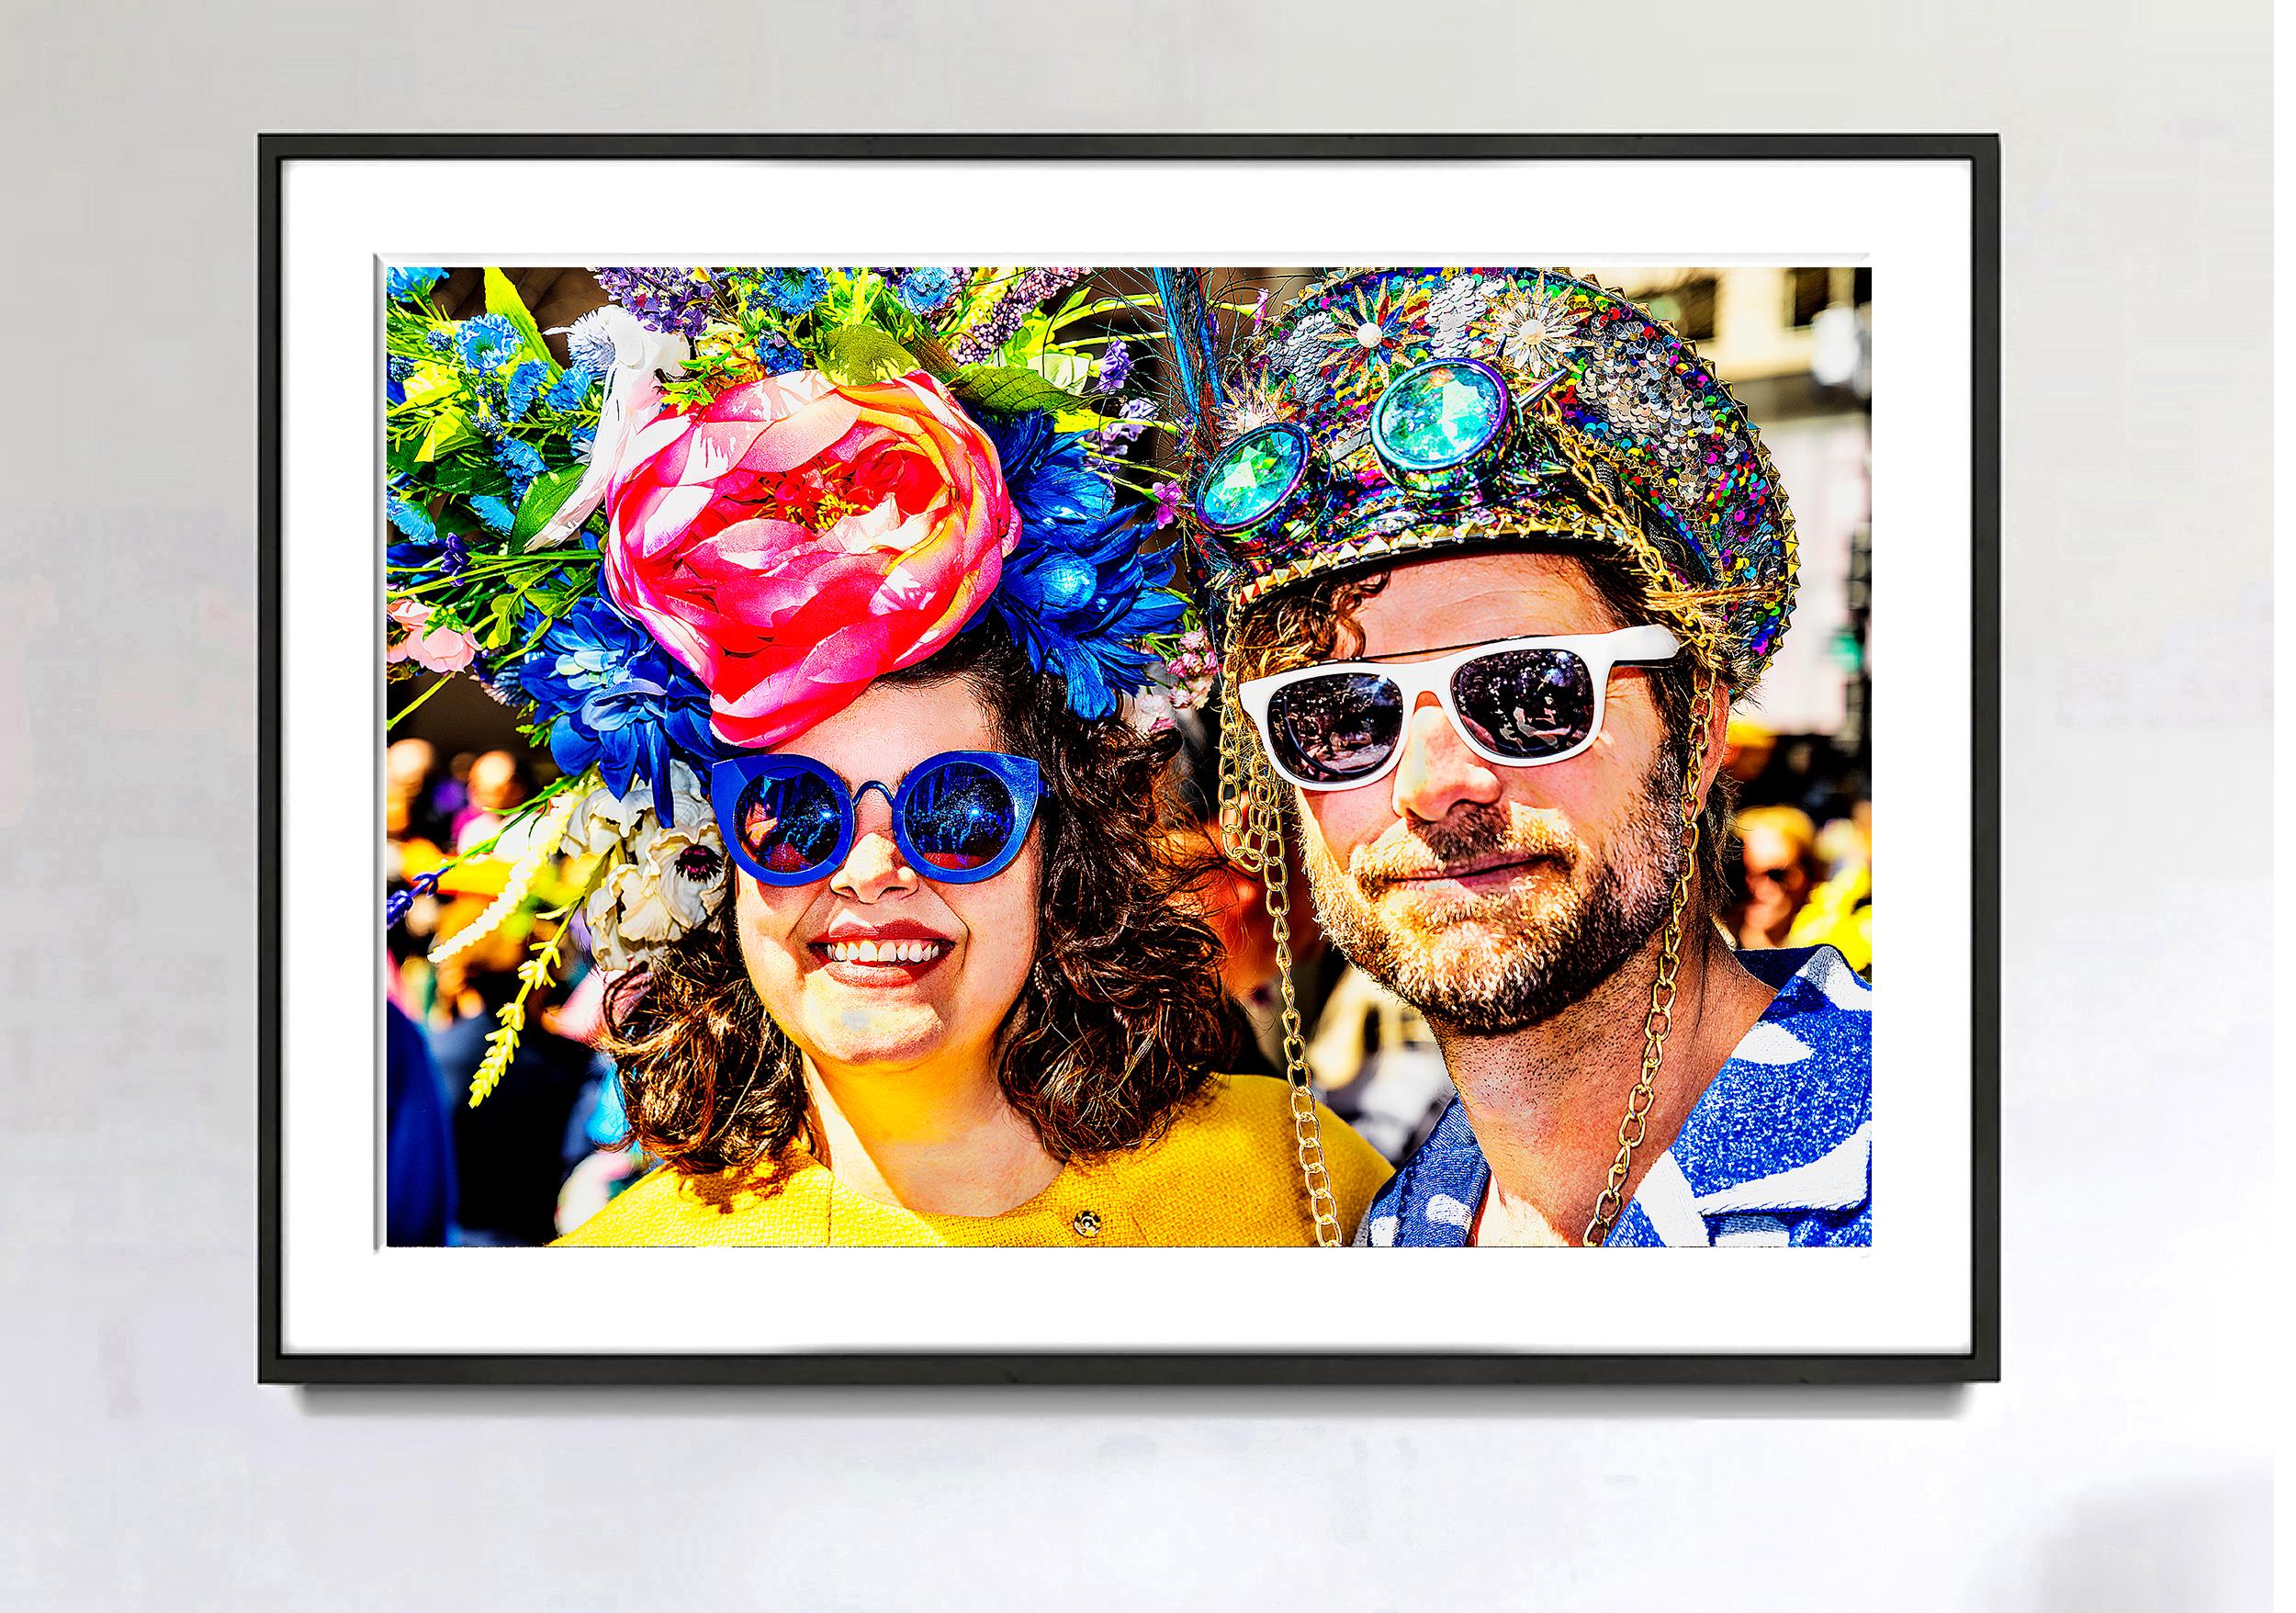 Zwei Teilnehmer an  Die Osterparade der Fifth Avenue zeigt ihre kunstvollen Millinery.
Der erfahrene Straßenfotograf Mitchell Funk hat dieses dramatische und farbenprächtige Doppelporträt aufgenommen, das ebenso abstrakt wie gegenständlich ist.